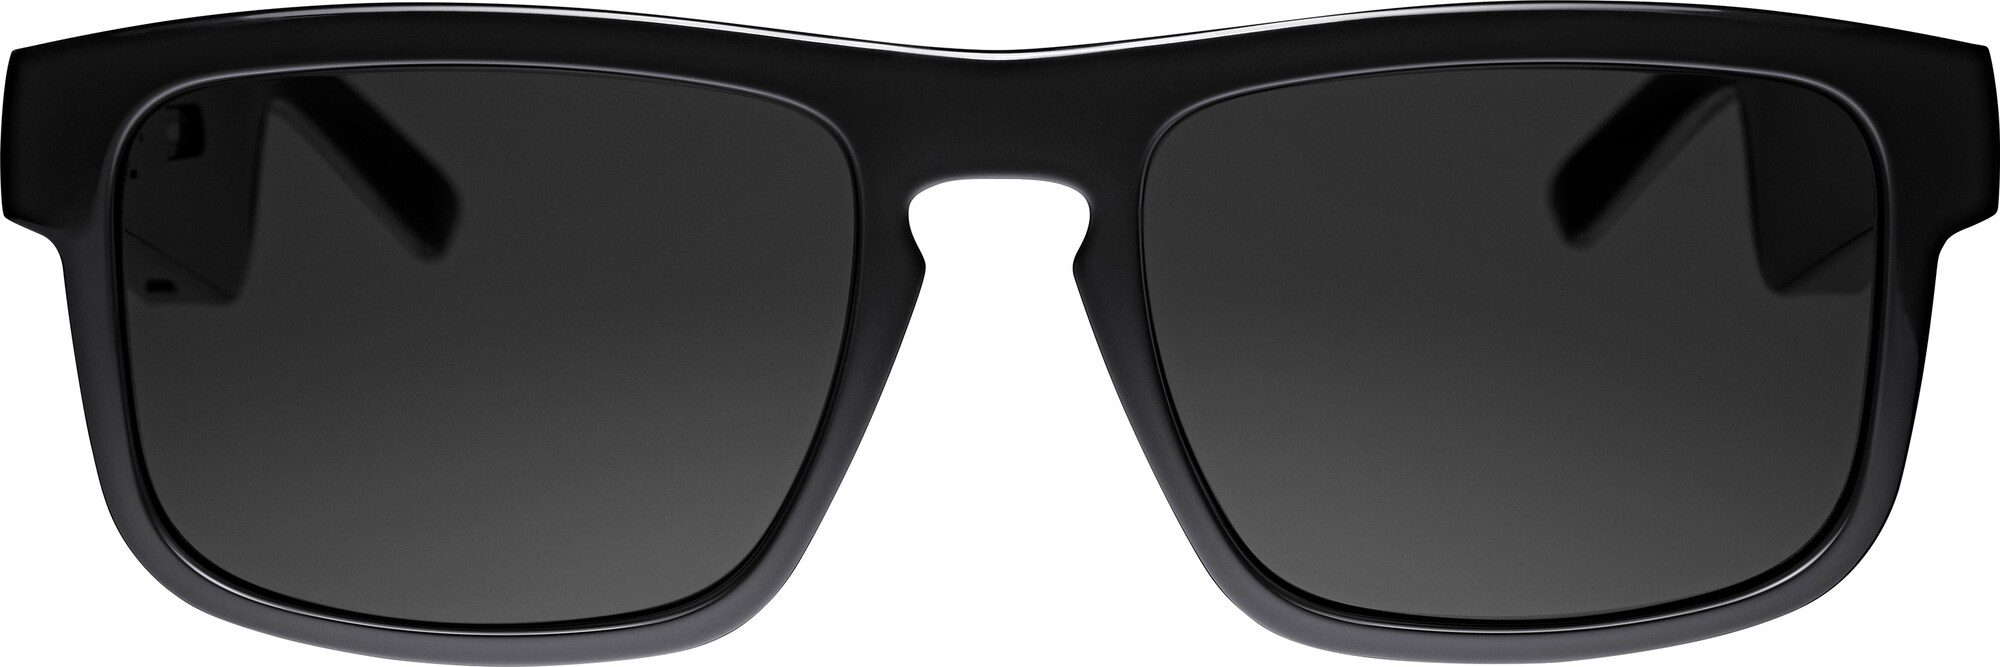 Bose Frames Tenor solglasögon med ljud (svart) - Elgiganten